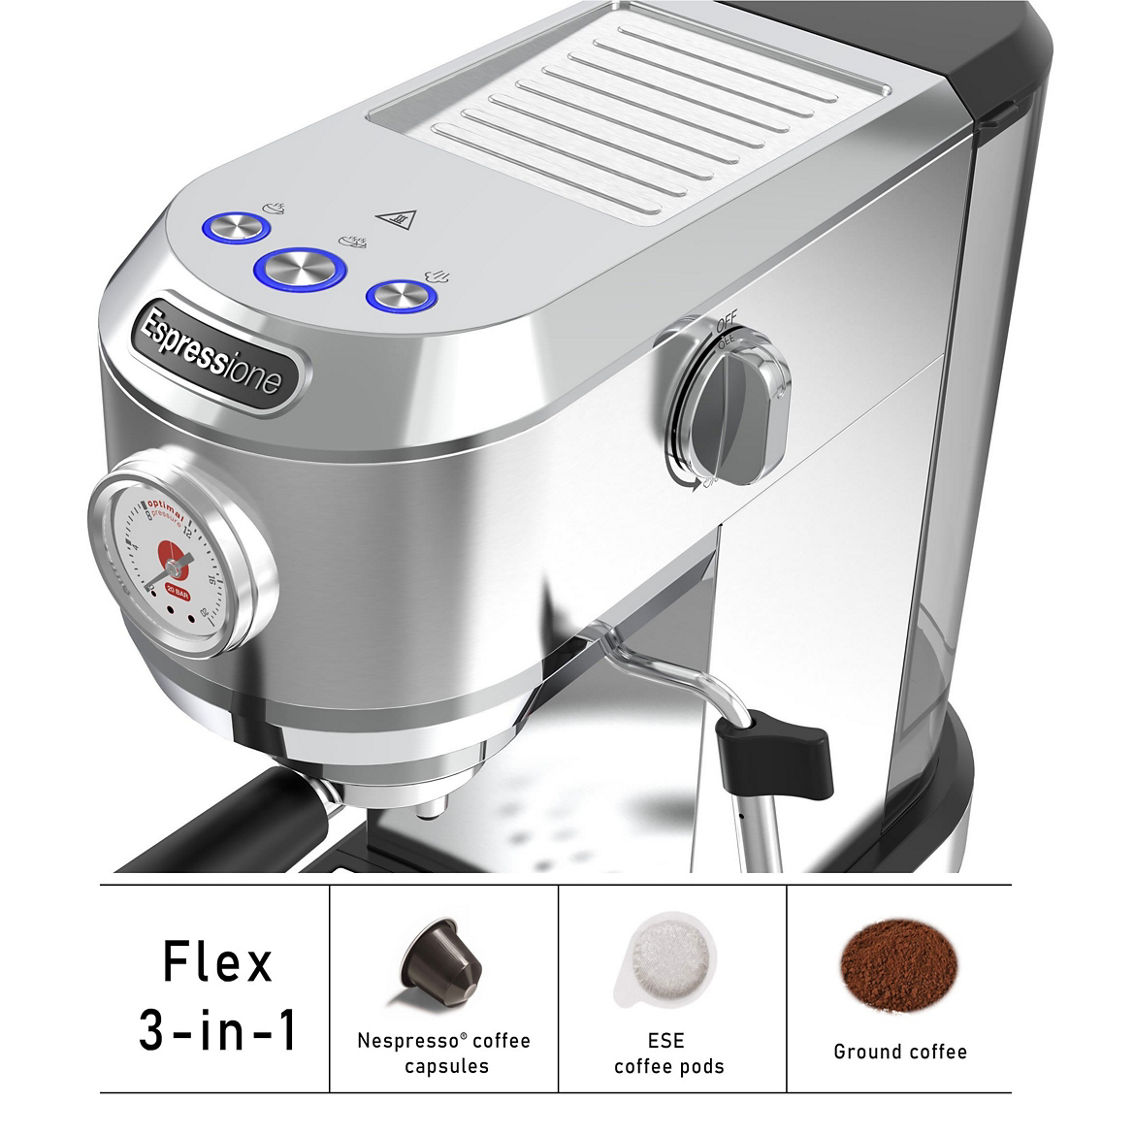 Espressione Flex 3-in-1 Espresso Coffee Machine - Image 3 of 5